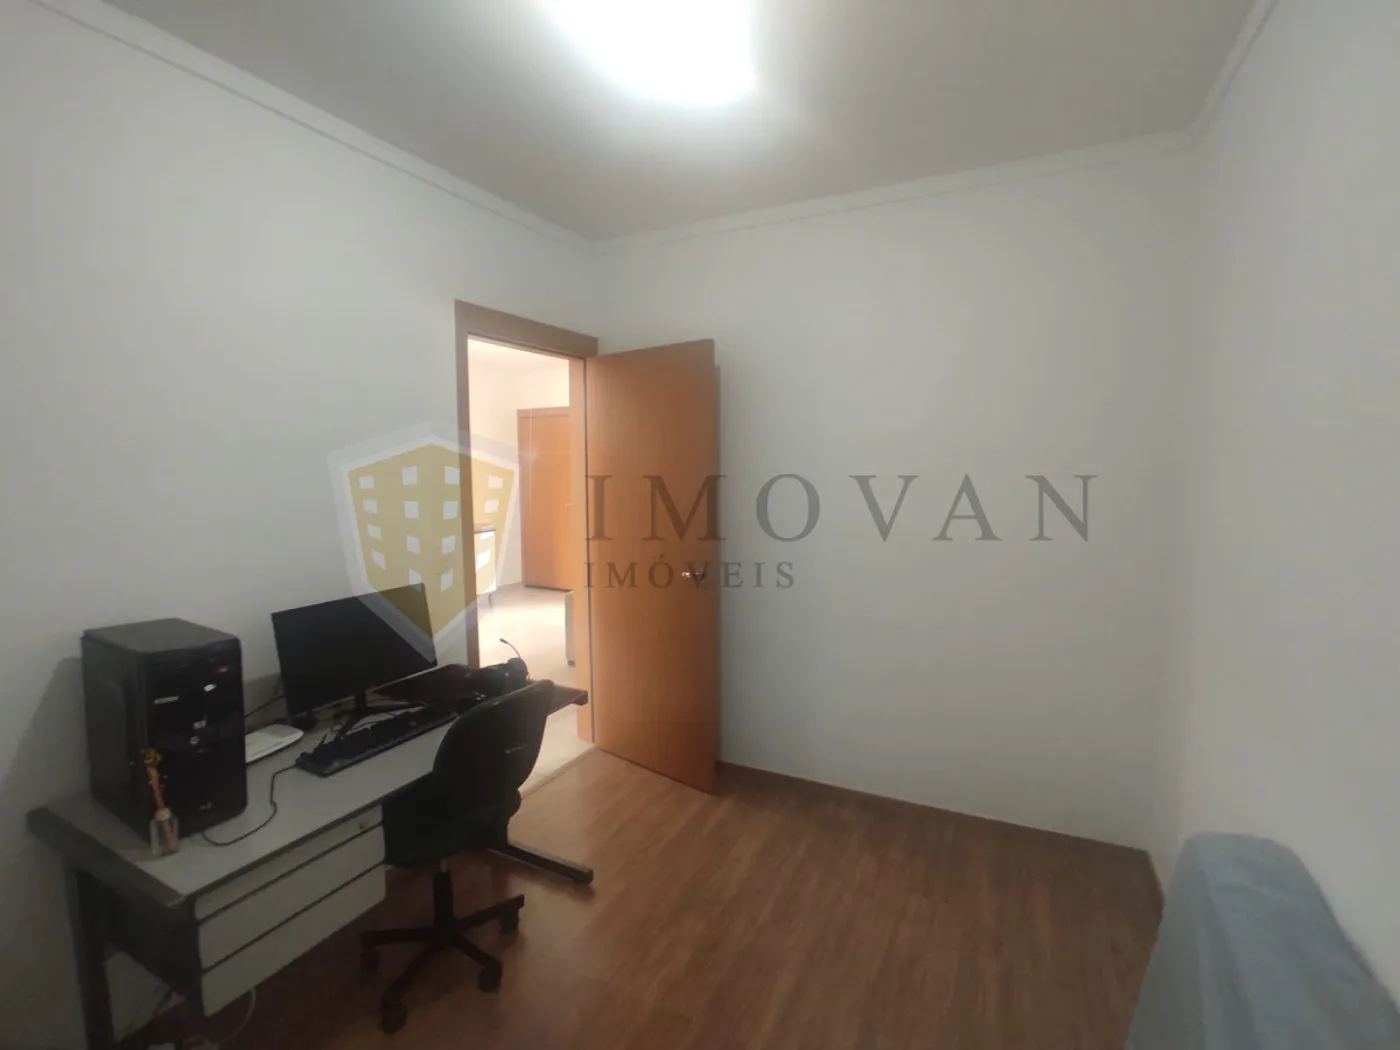 Comprar Apartamento / Padrão em Ribeirão Preto R$ 170.000,00 - Foto 11